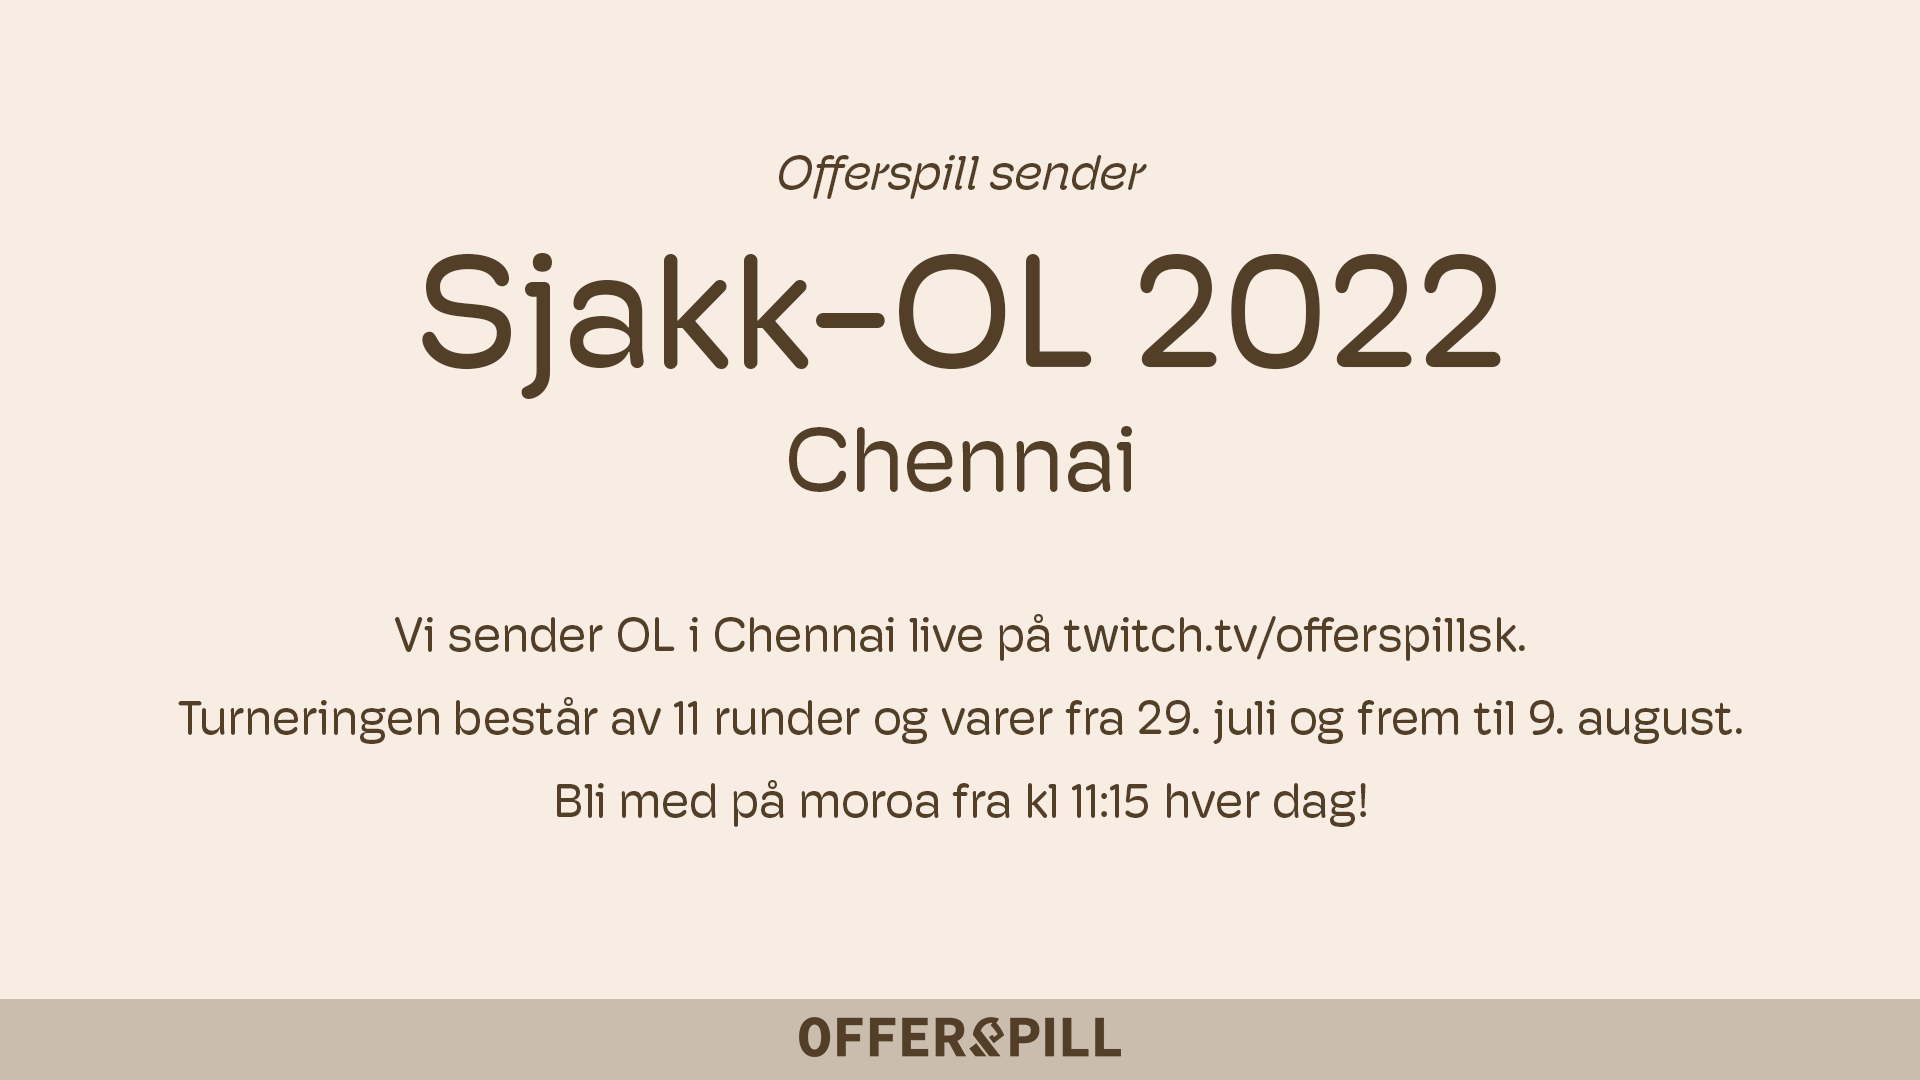 Offerspill sender Sjakk-OL